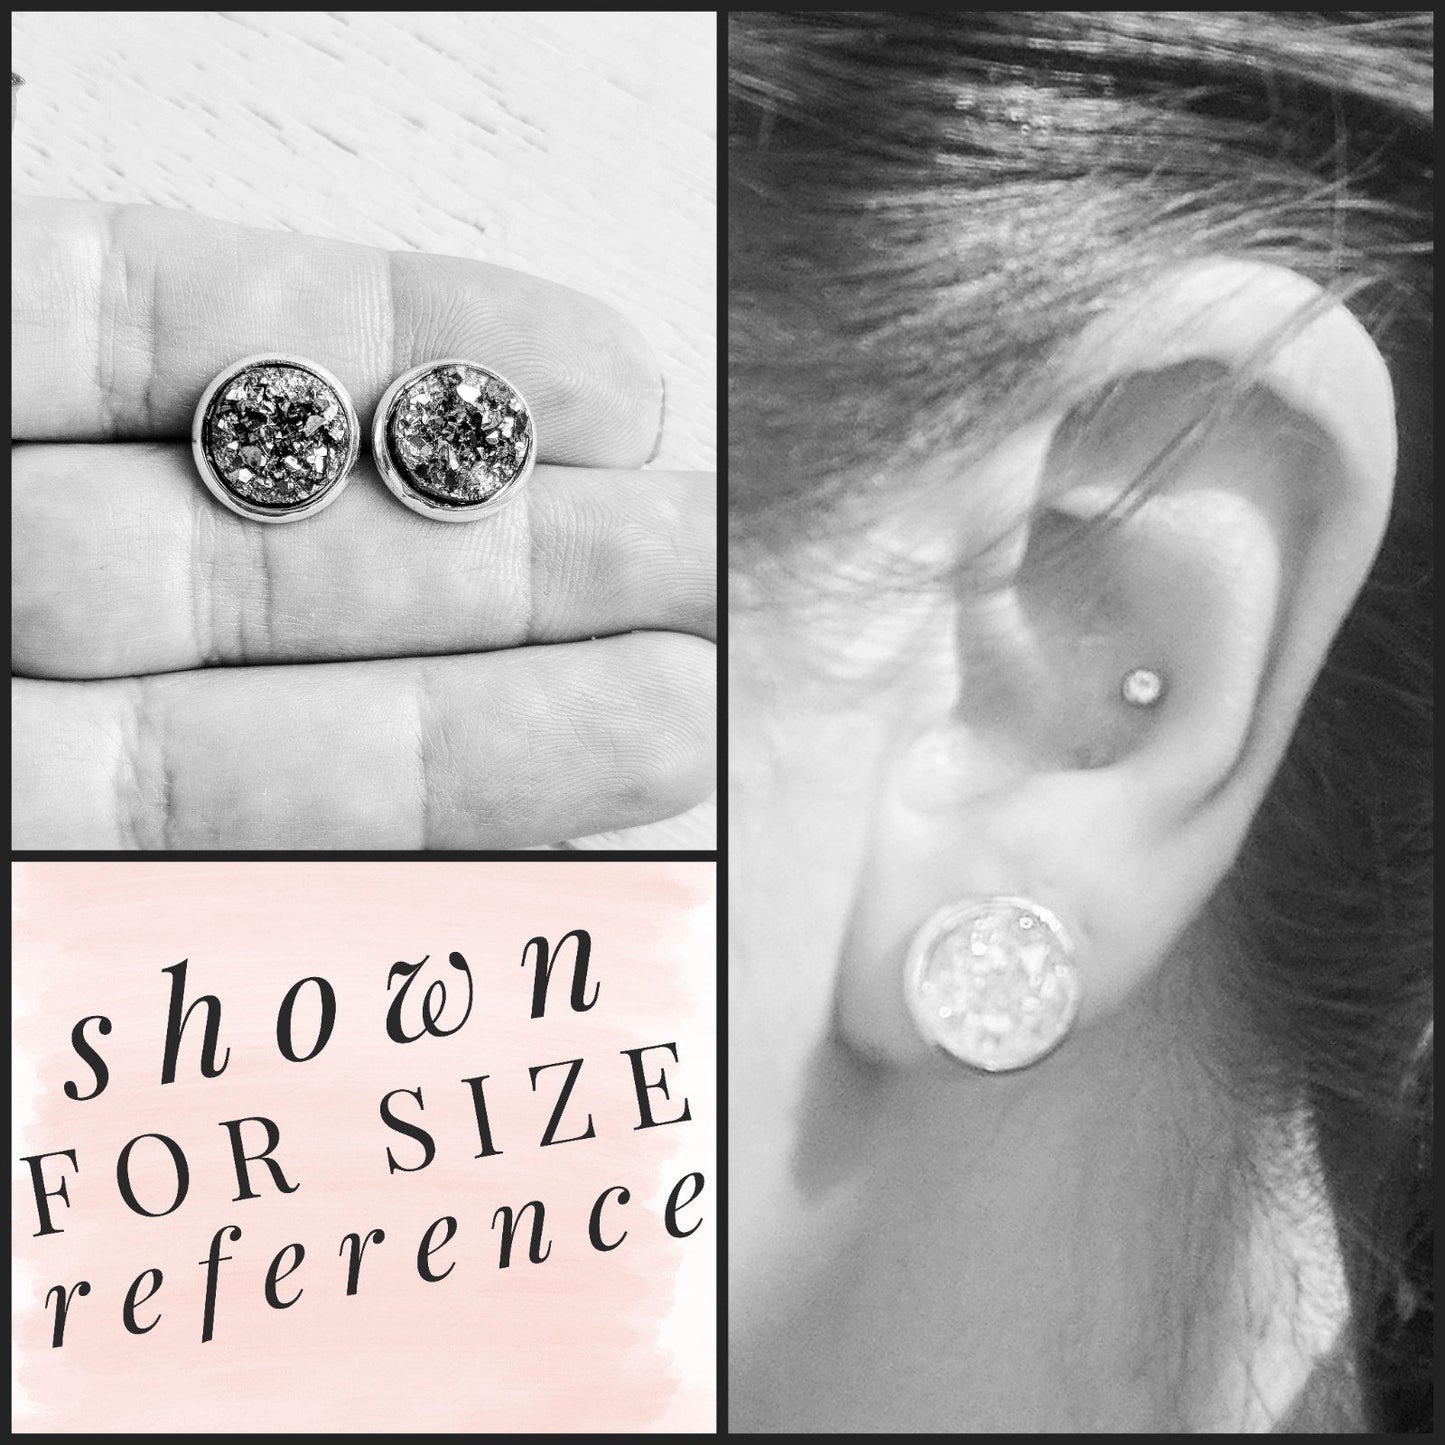 Silver on Silver - Druzy Stud Earrings - Hypoallergenic Posts